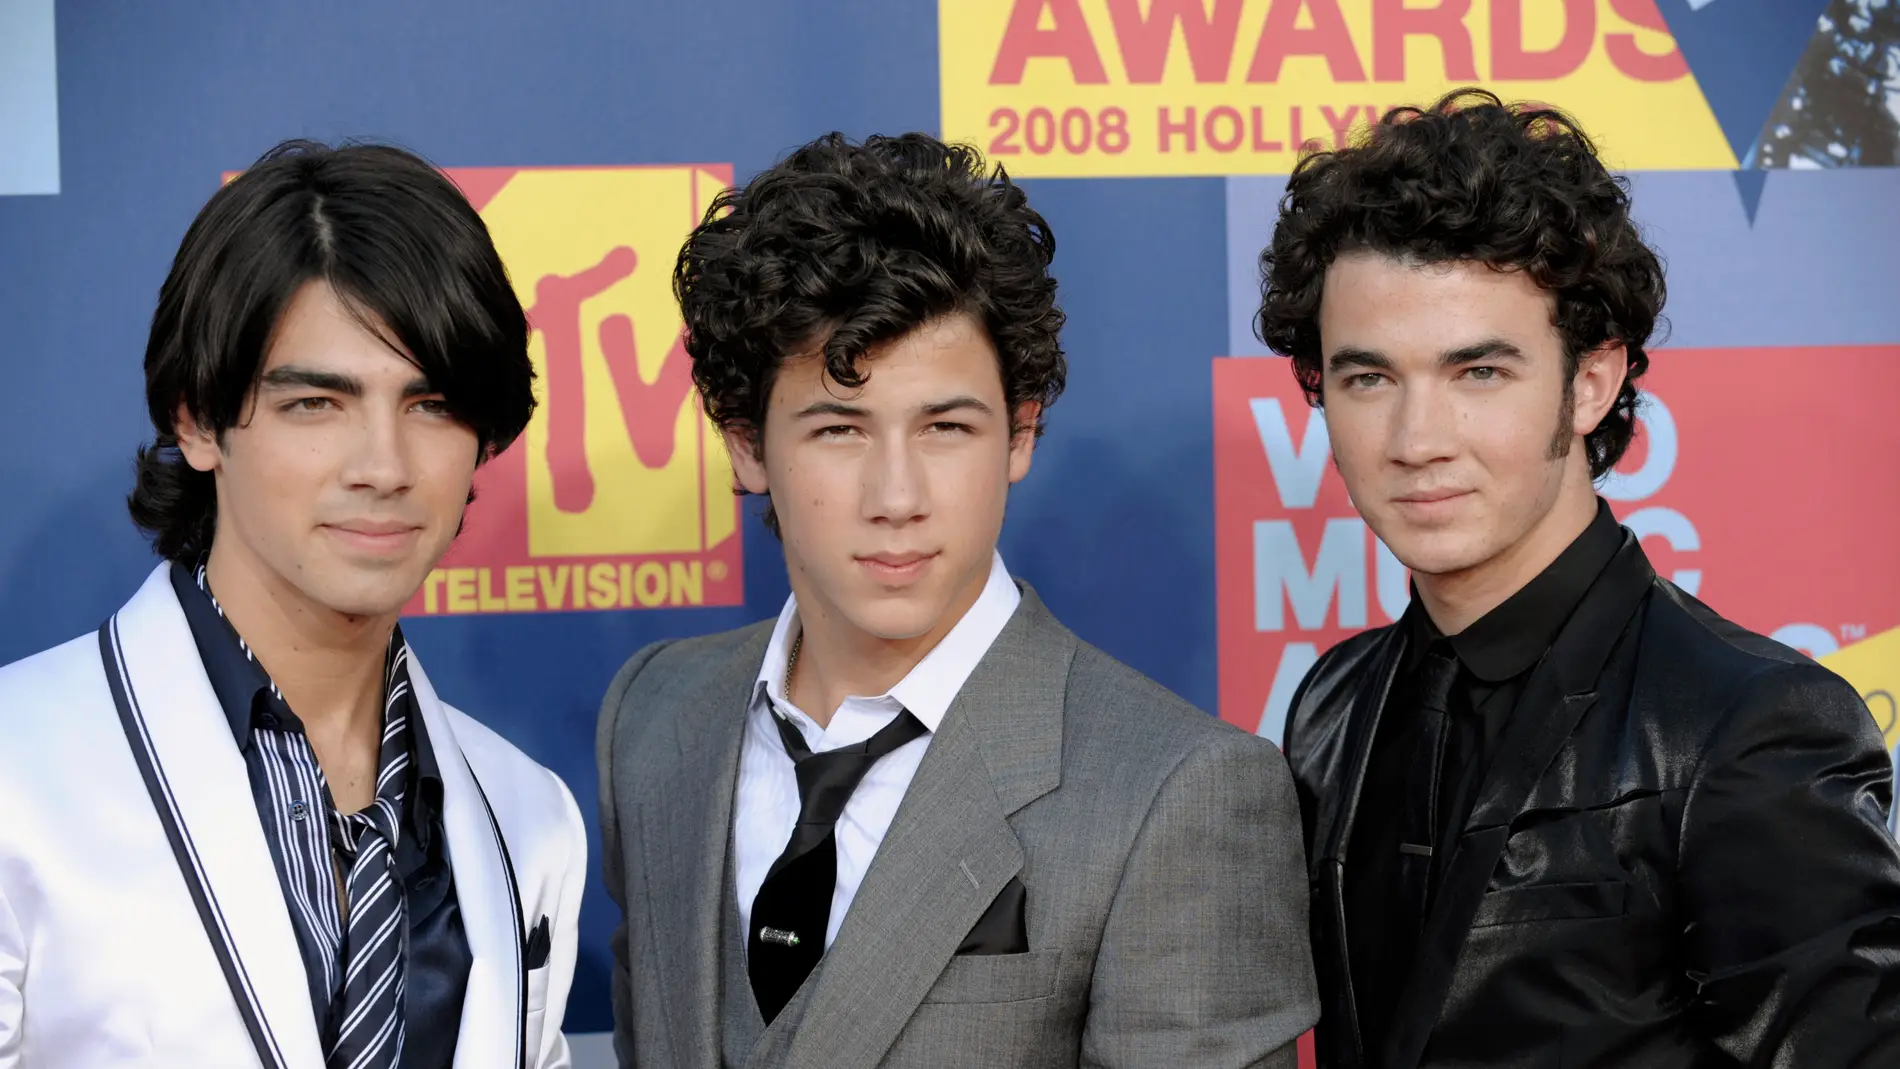 Así eran los Jonas Brothers en 2008 title=